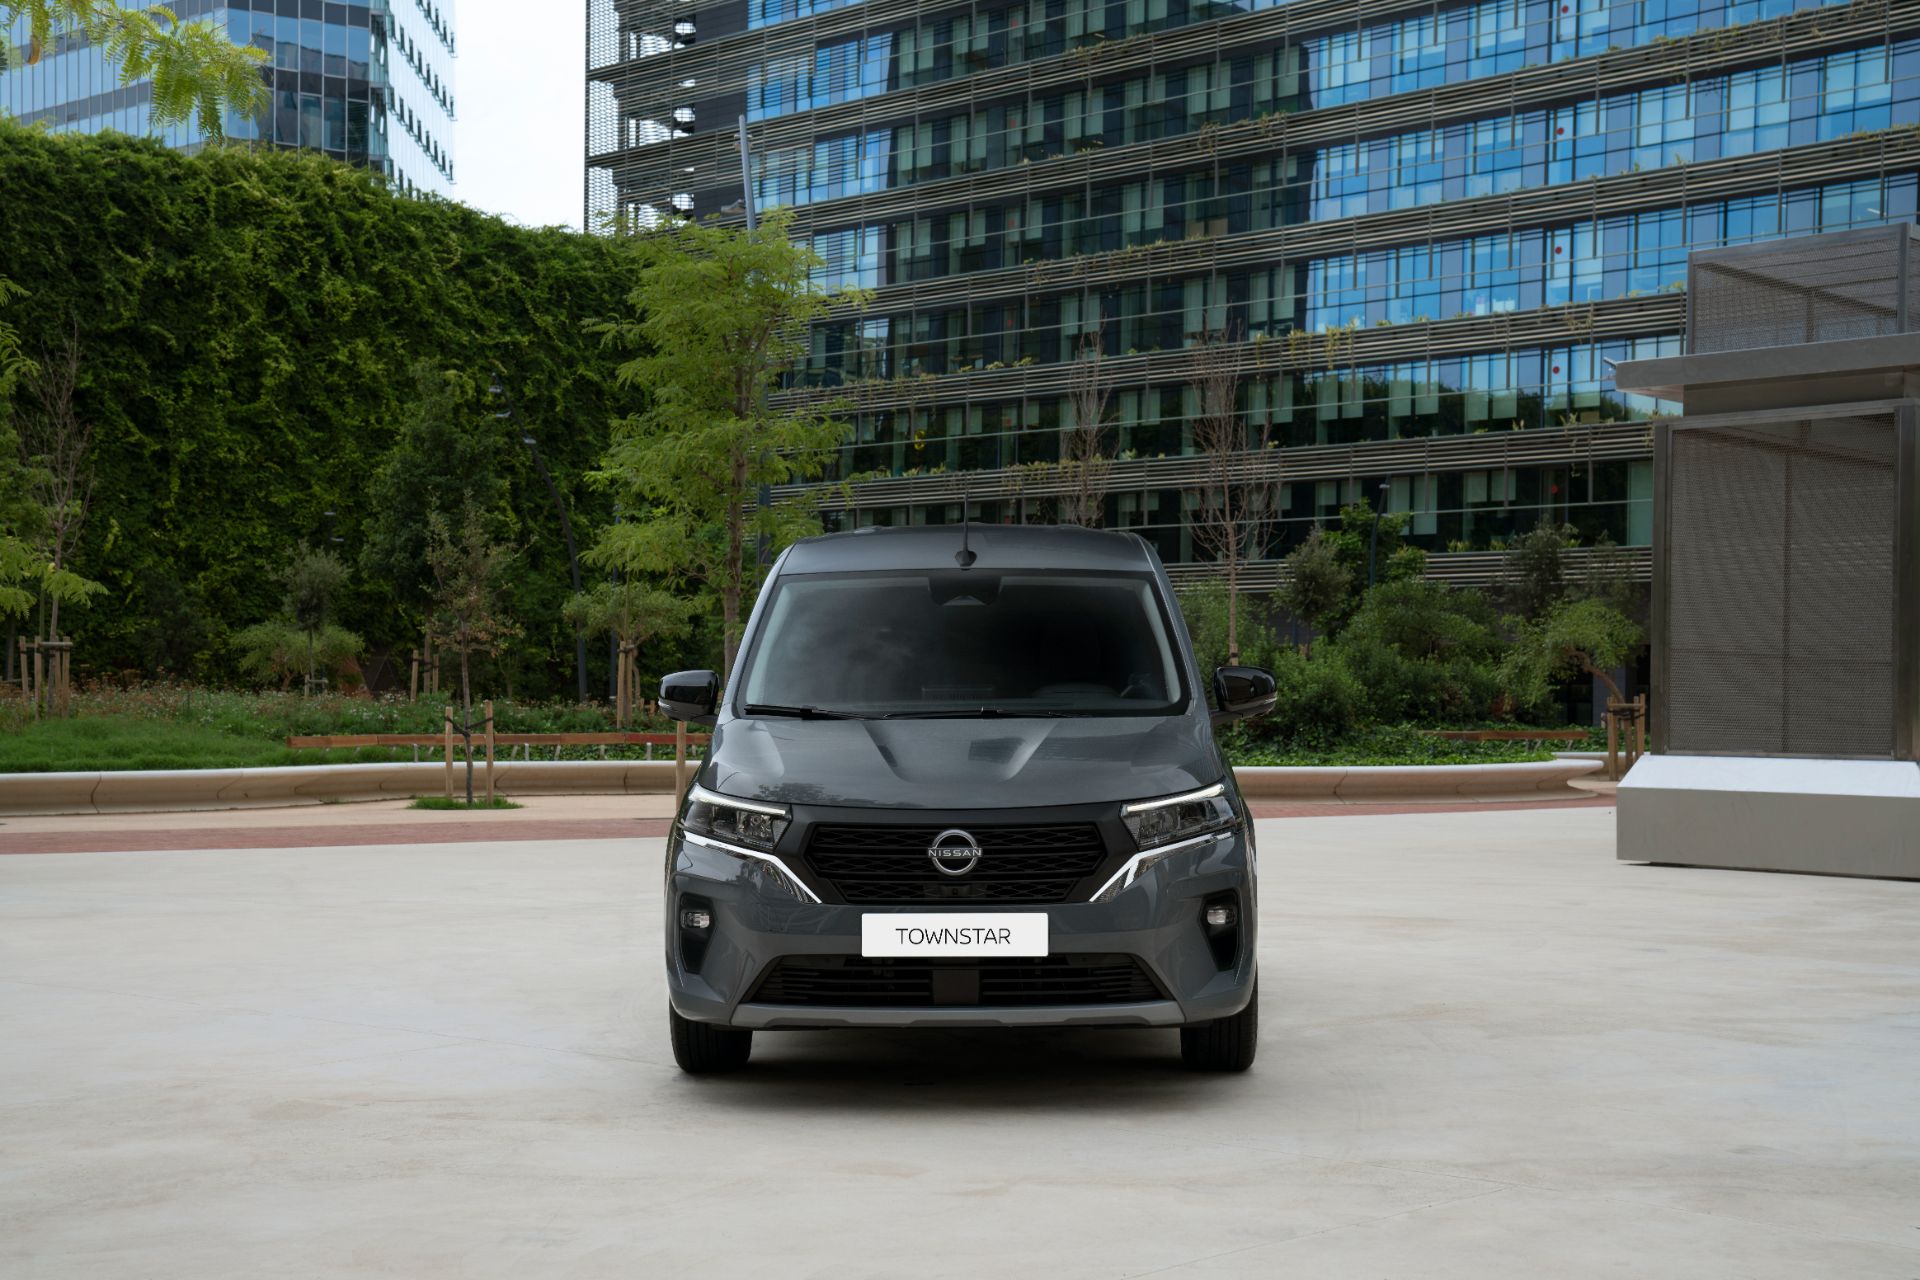 Renault Kangoo'nun ikiz kardeşi tanıtıldı: Yeni Nissan Townstar